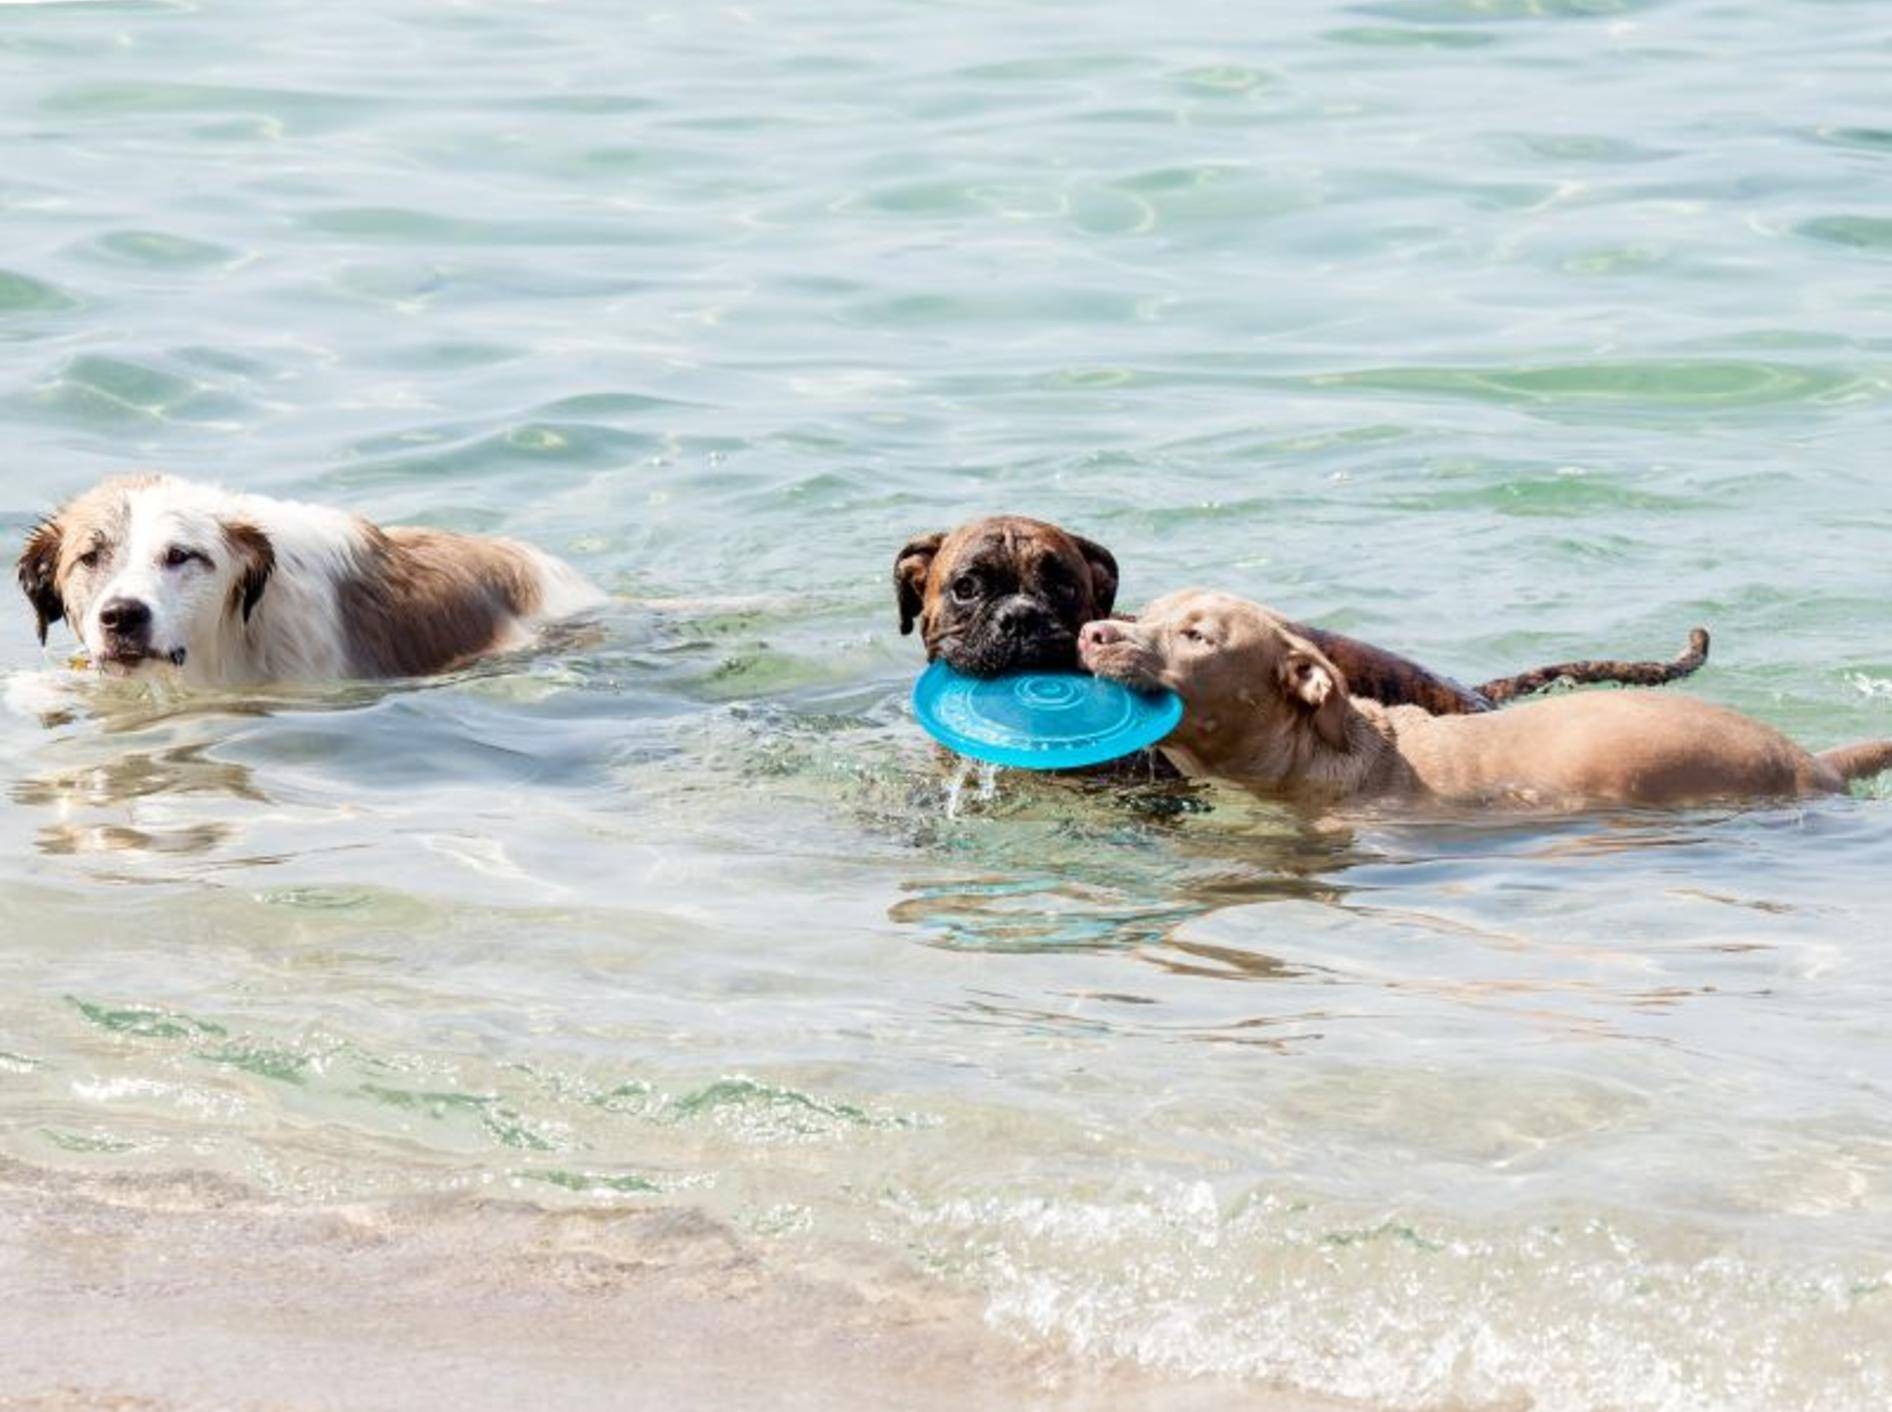 Hundespielzeug, das schwimmen kann – Bild: Shutterstock / maratr